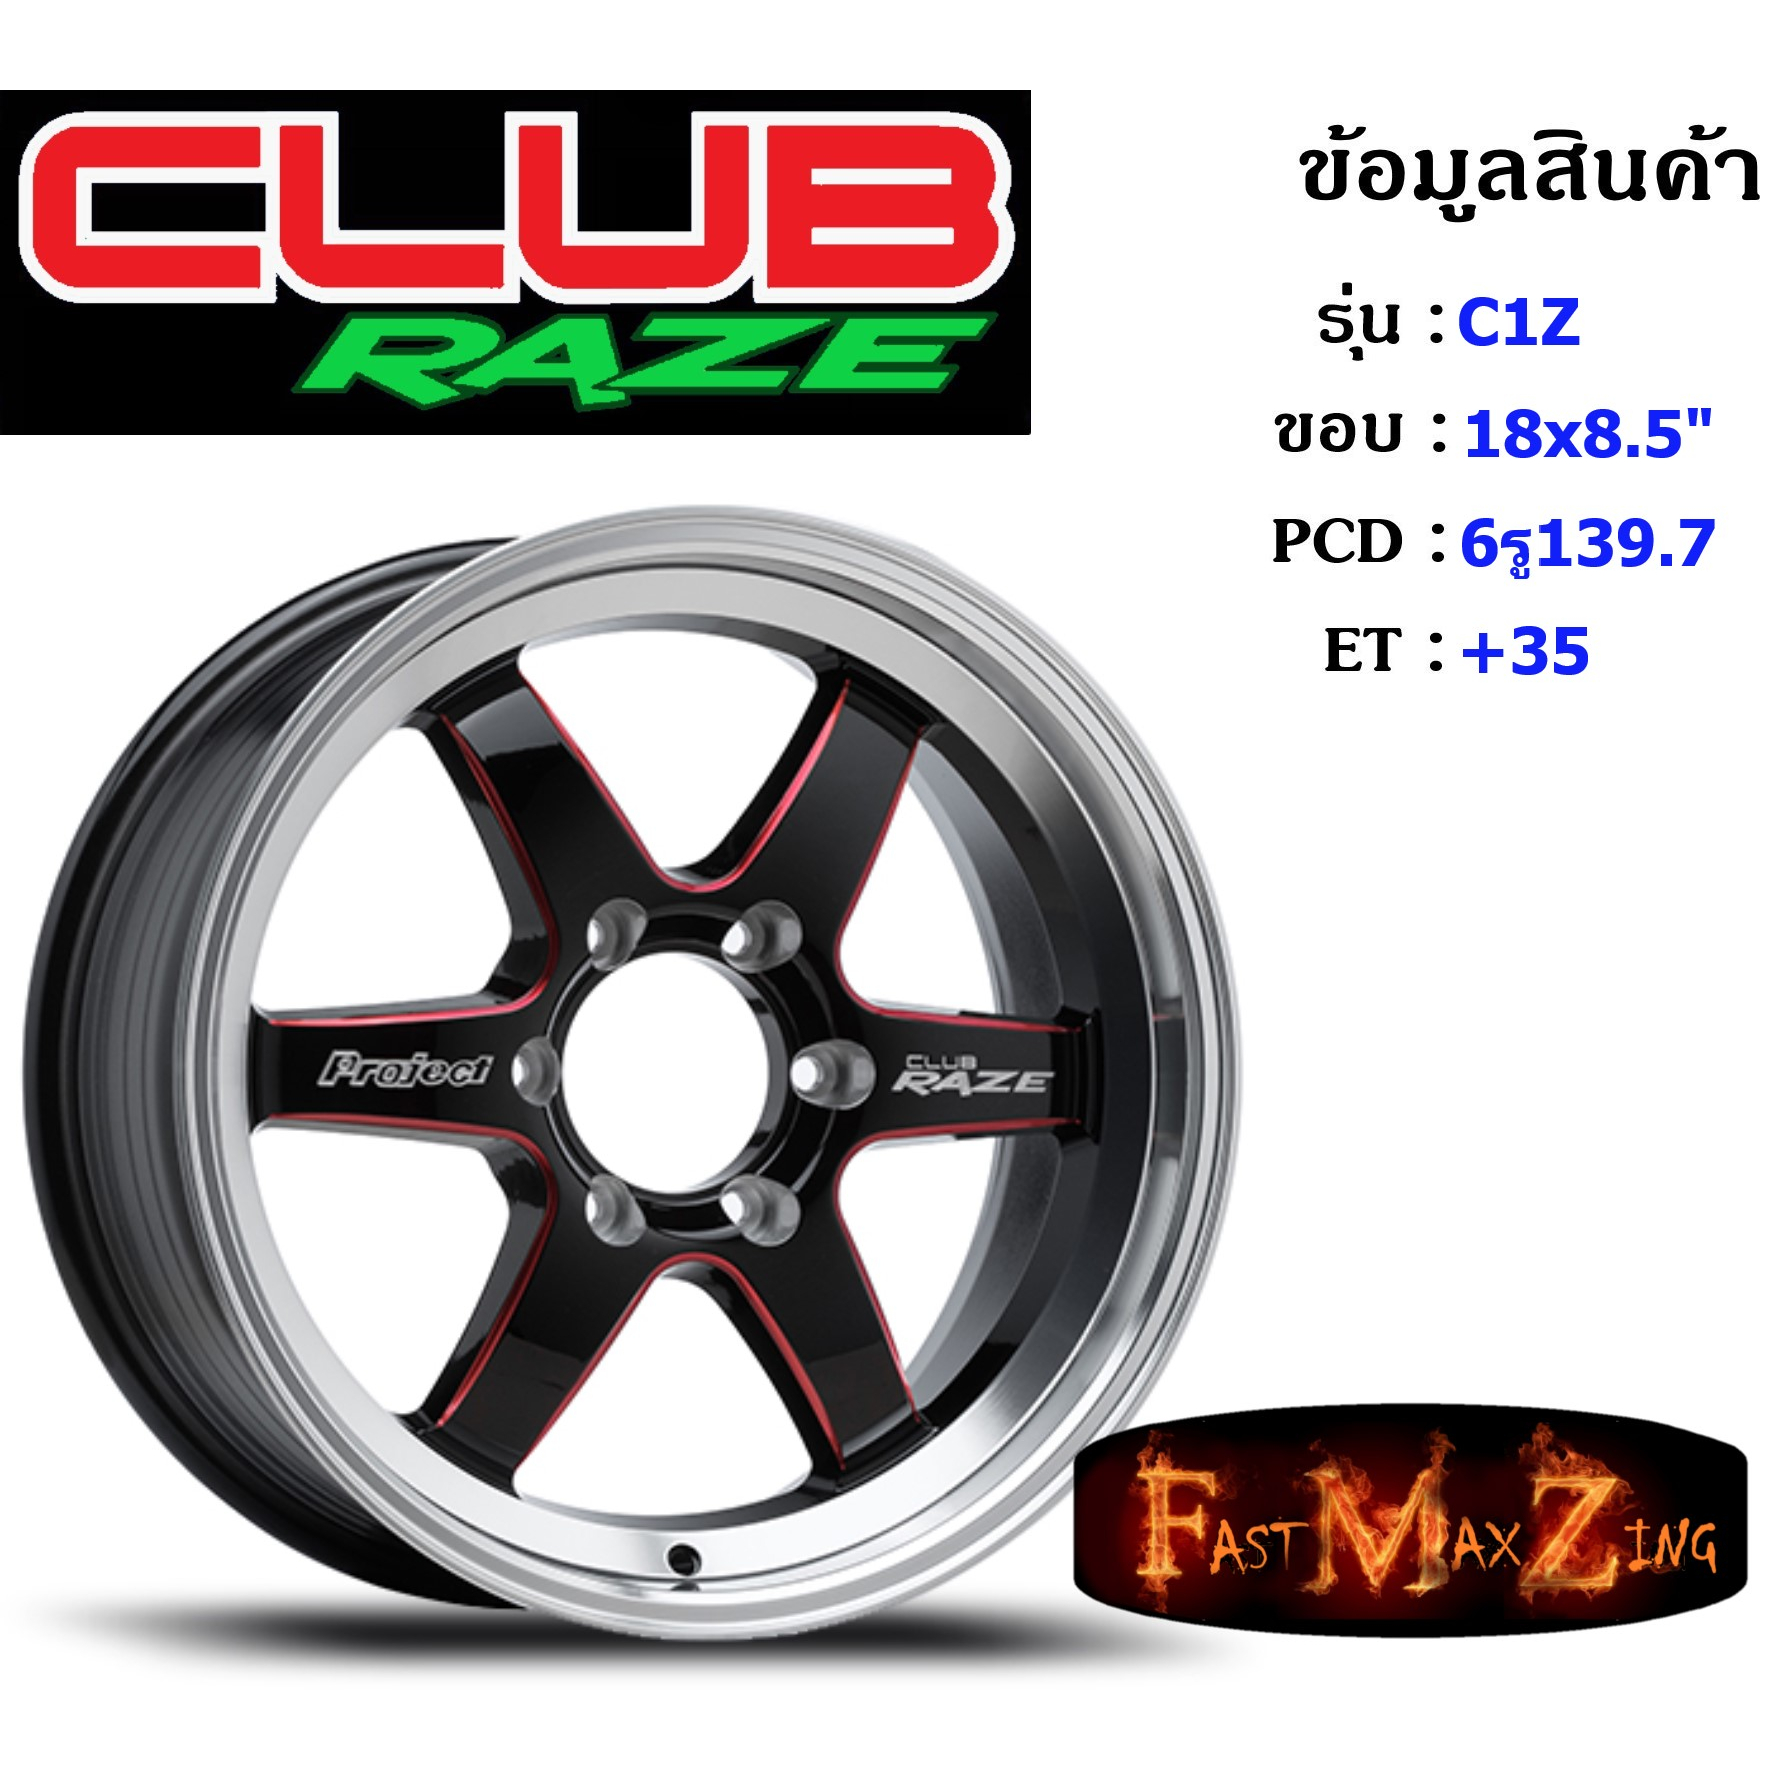 Club Race Wheel C1Z ขอบ 18x8.5" 6รู139.7 ET+35 สีRBKAT แม็กรถยนต์ ล้อแม็ก แม็กรถยนต์ขอบ18 แม็กขอบ18